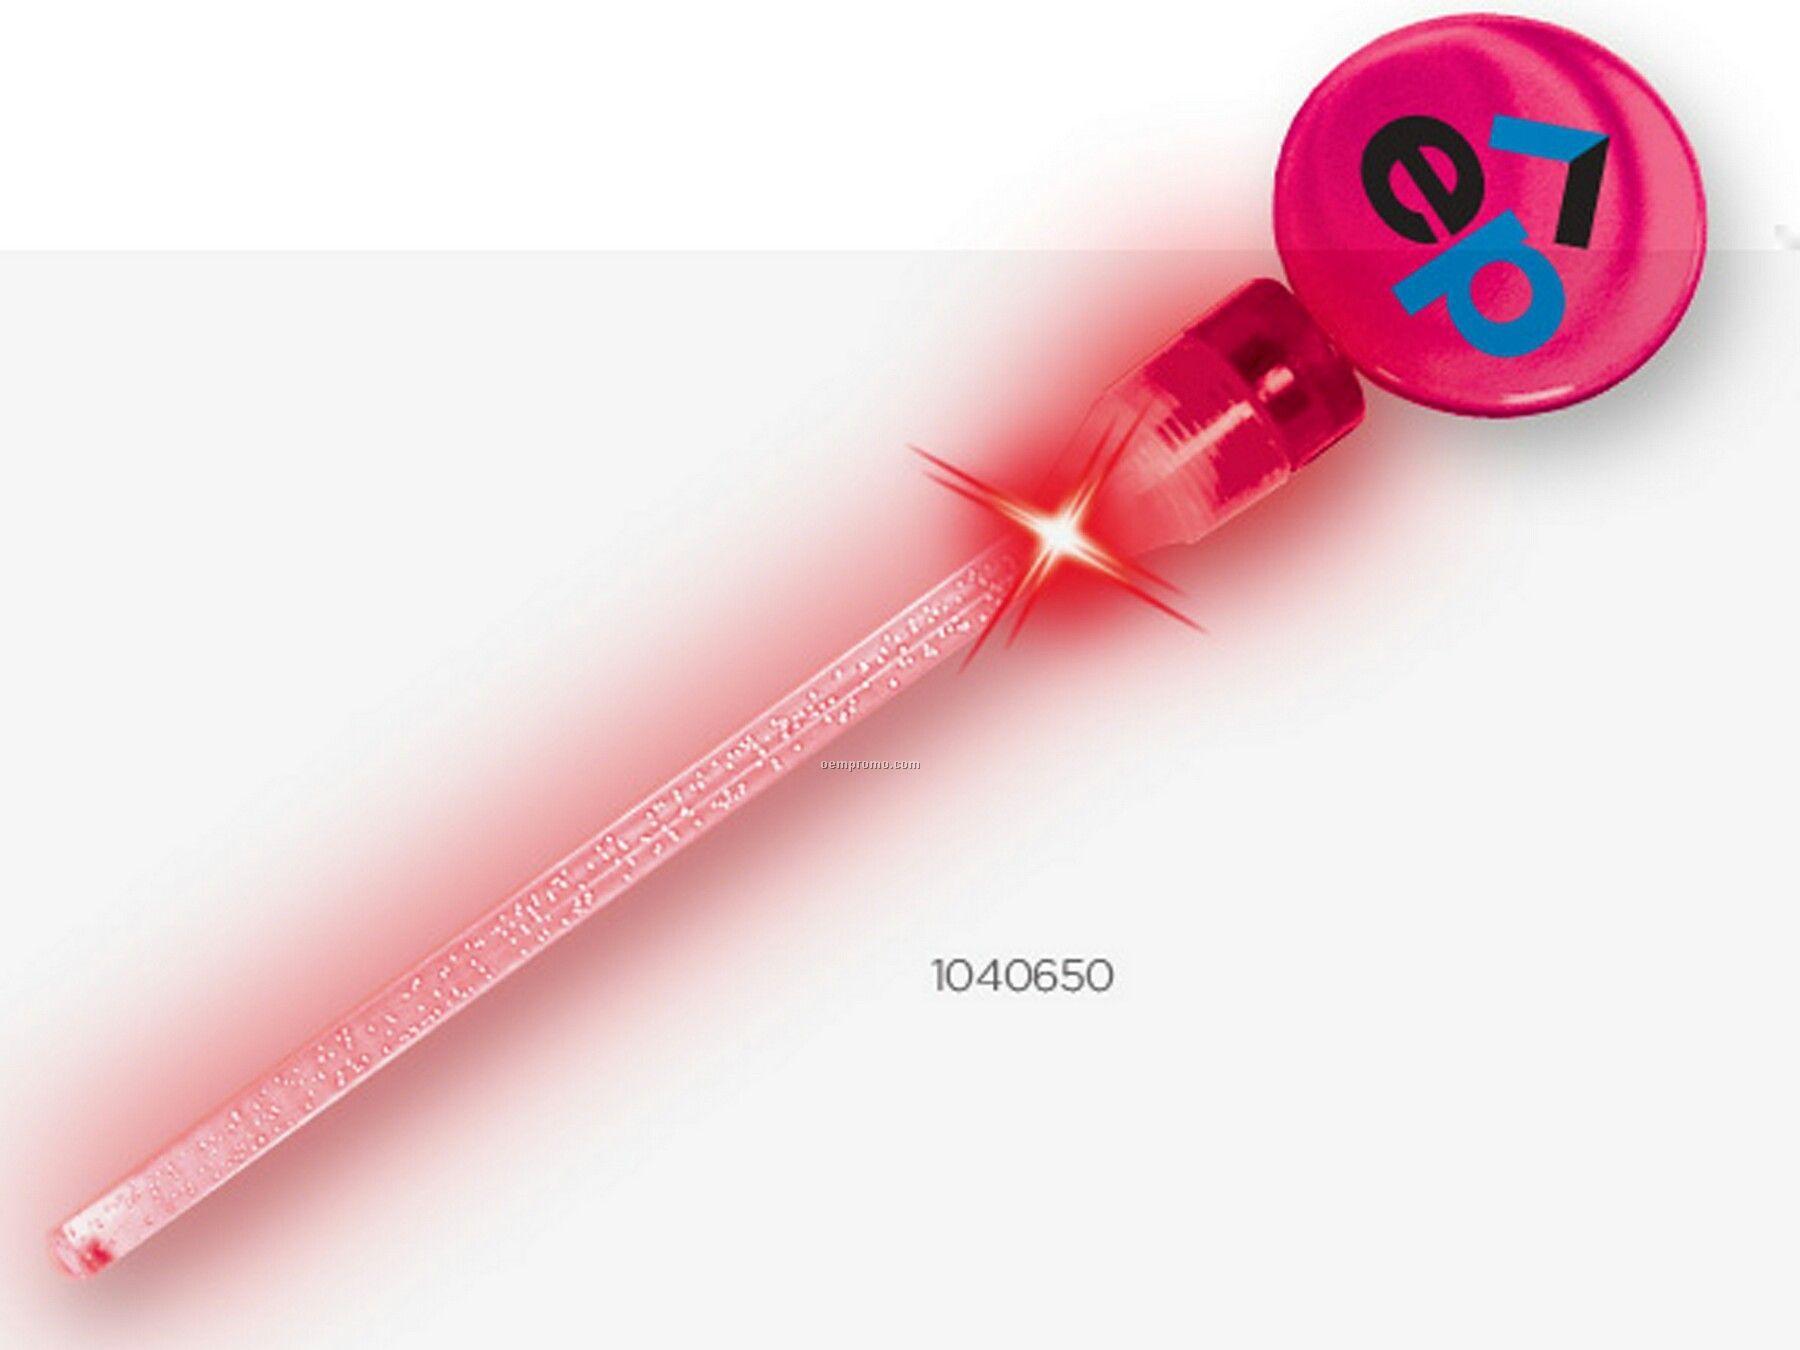 Light Up Stirrer - Pink / Red LED